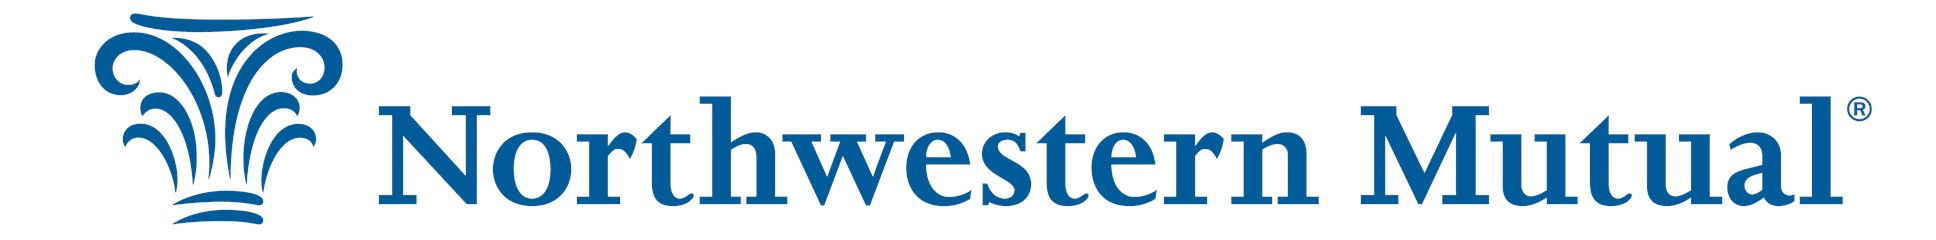 Northwestern Mutual - Capital Region Company Logo